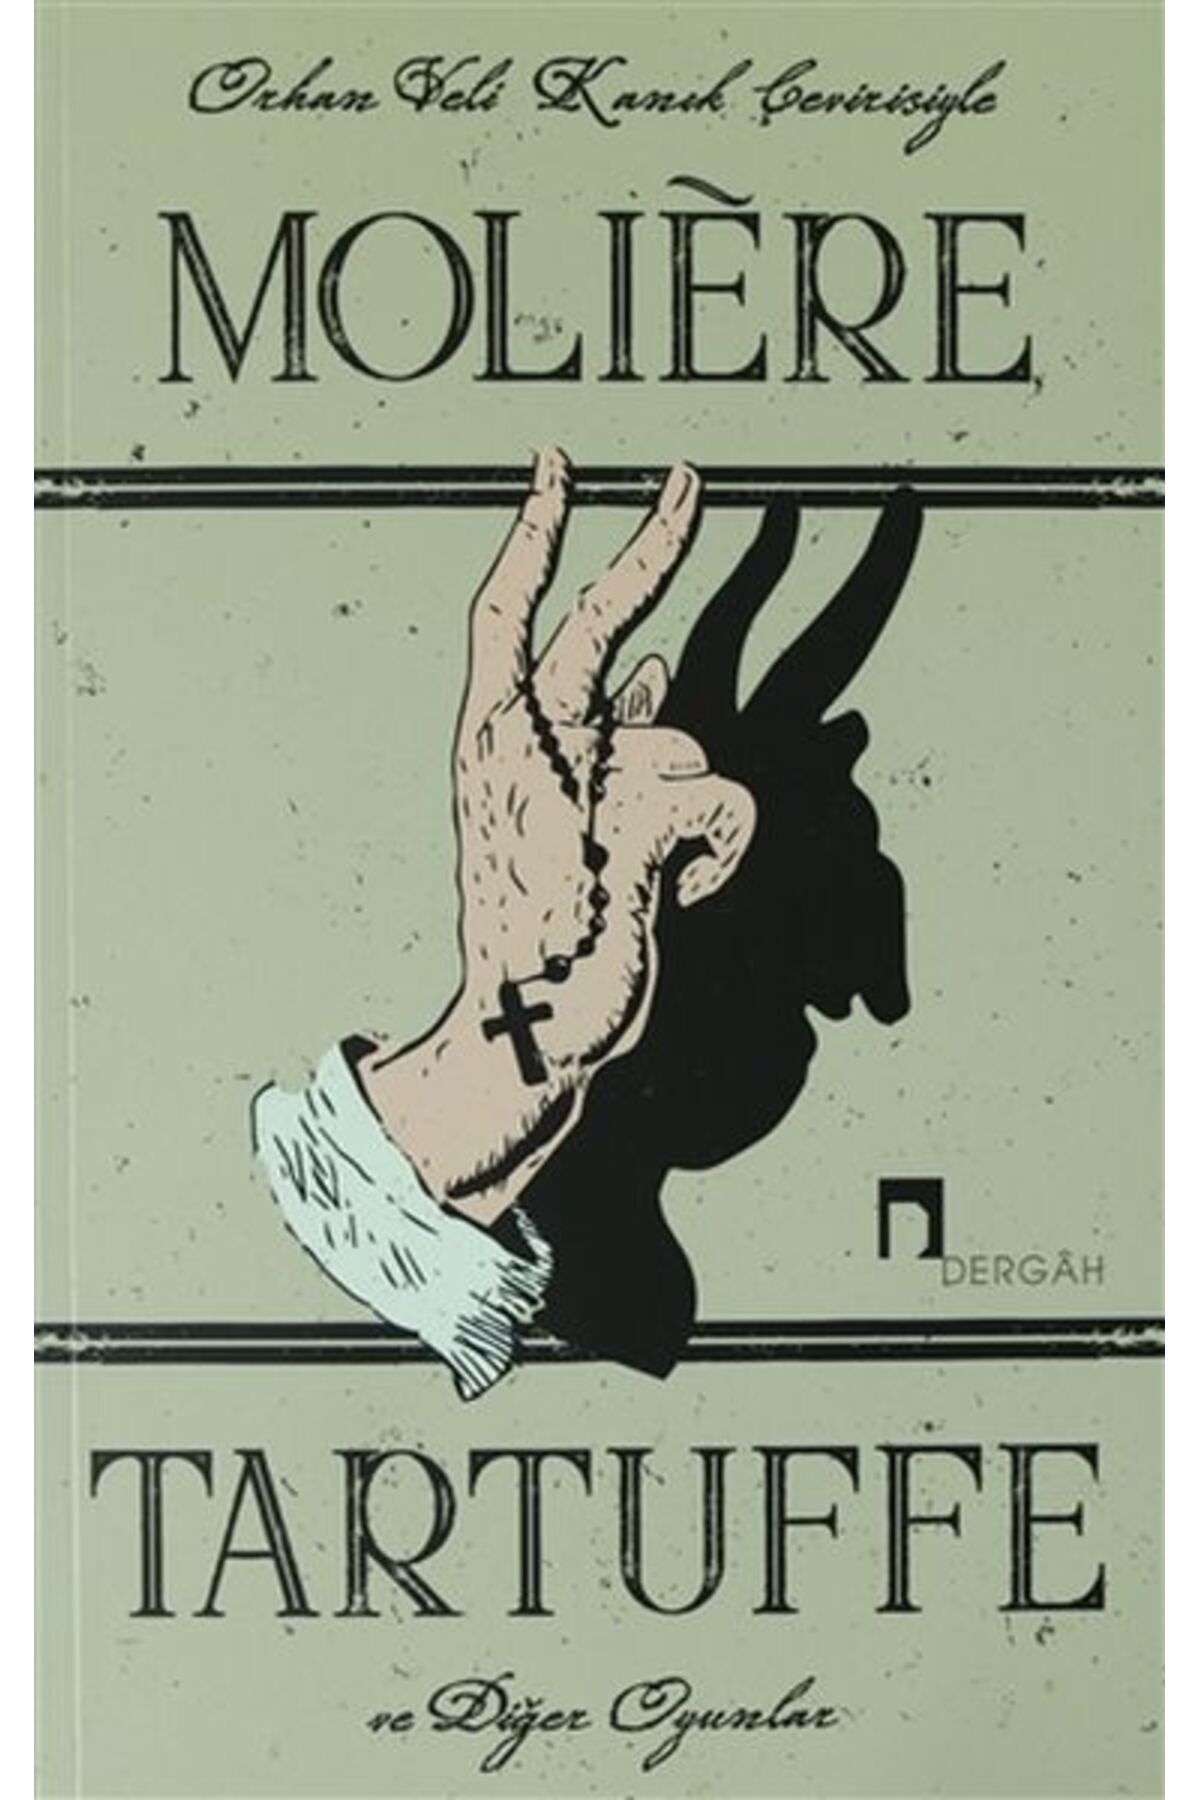 Dergah Yayınları Tartuffe ve Diğer Oyunlar - Le Tartuffe